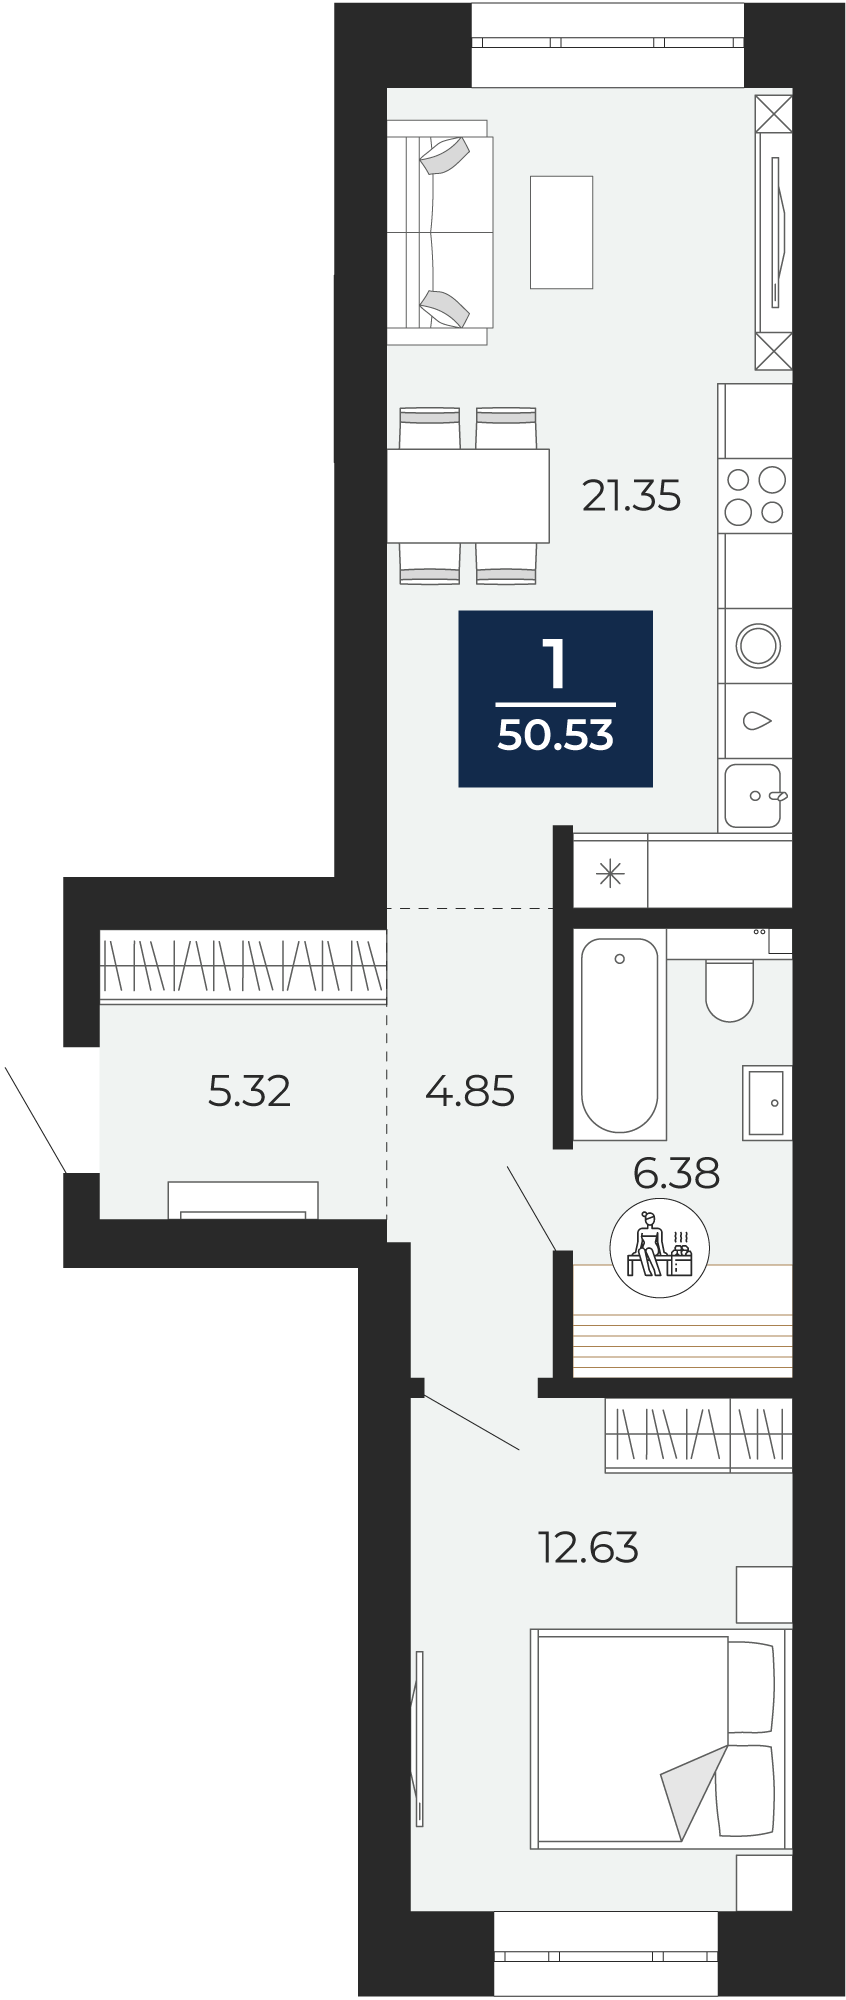 Квартира № 86, 1-комнатная, 50.53 кв. м, 8 этаж